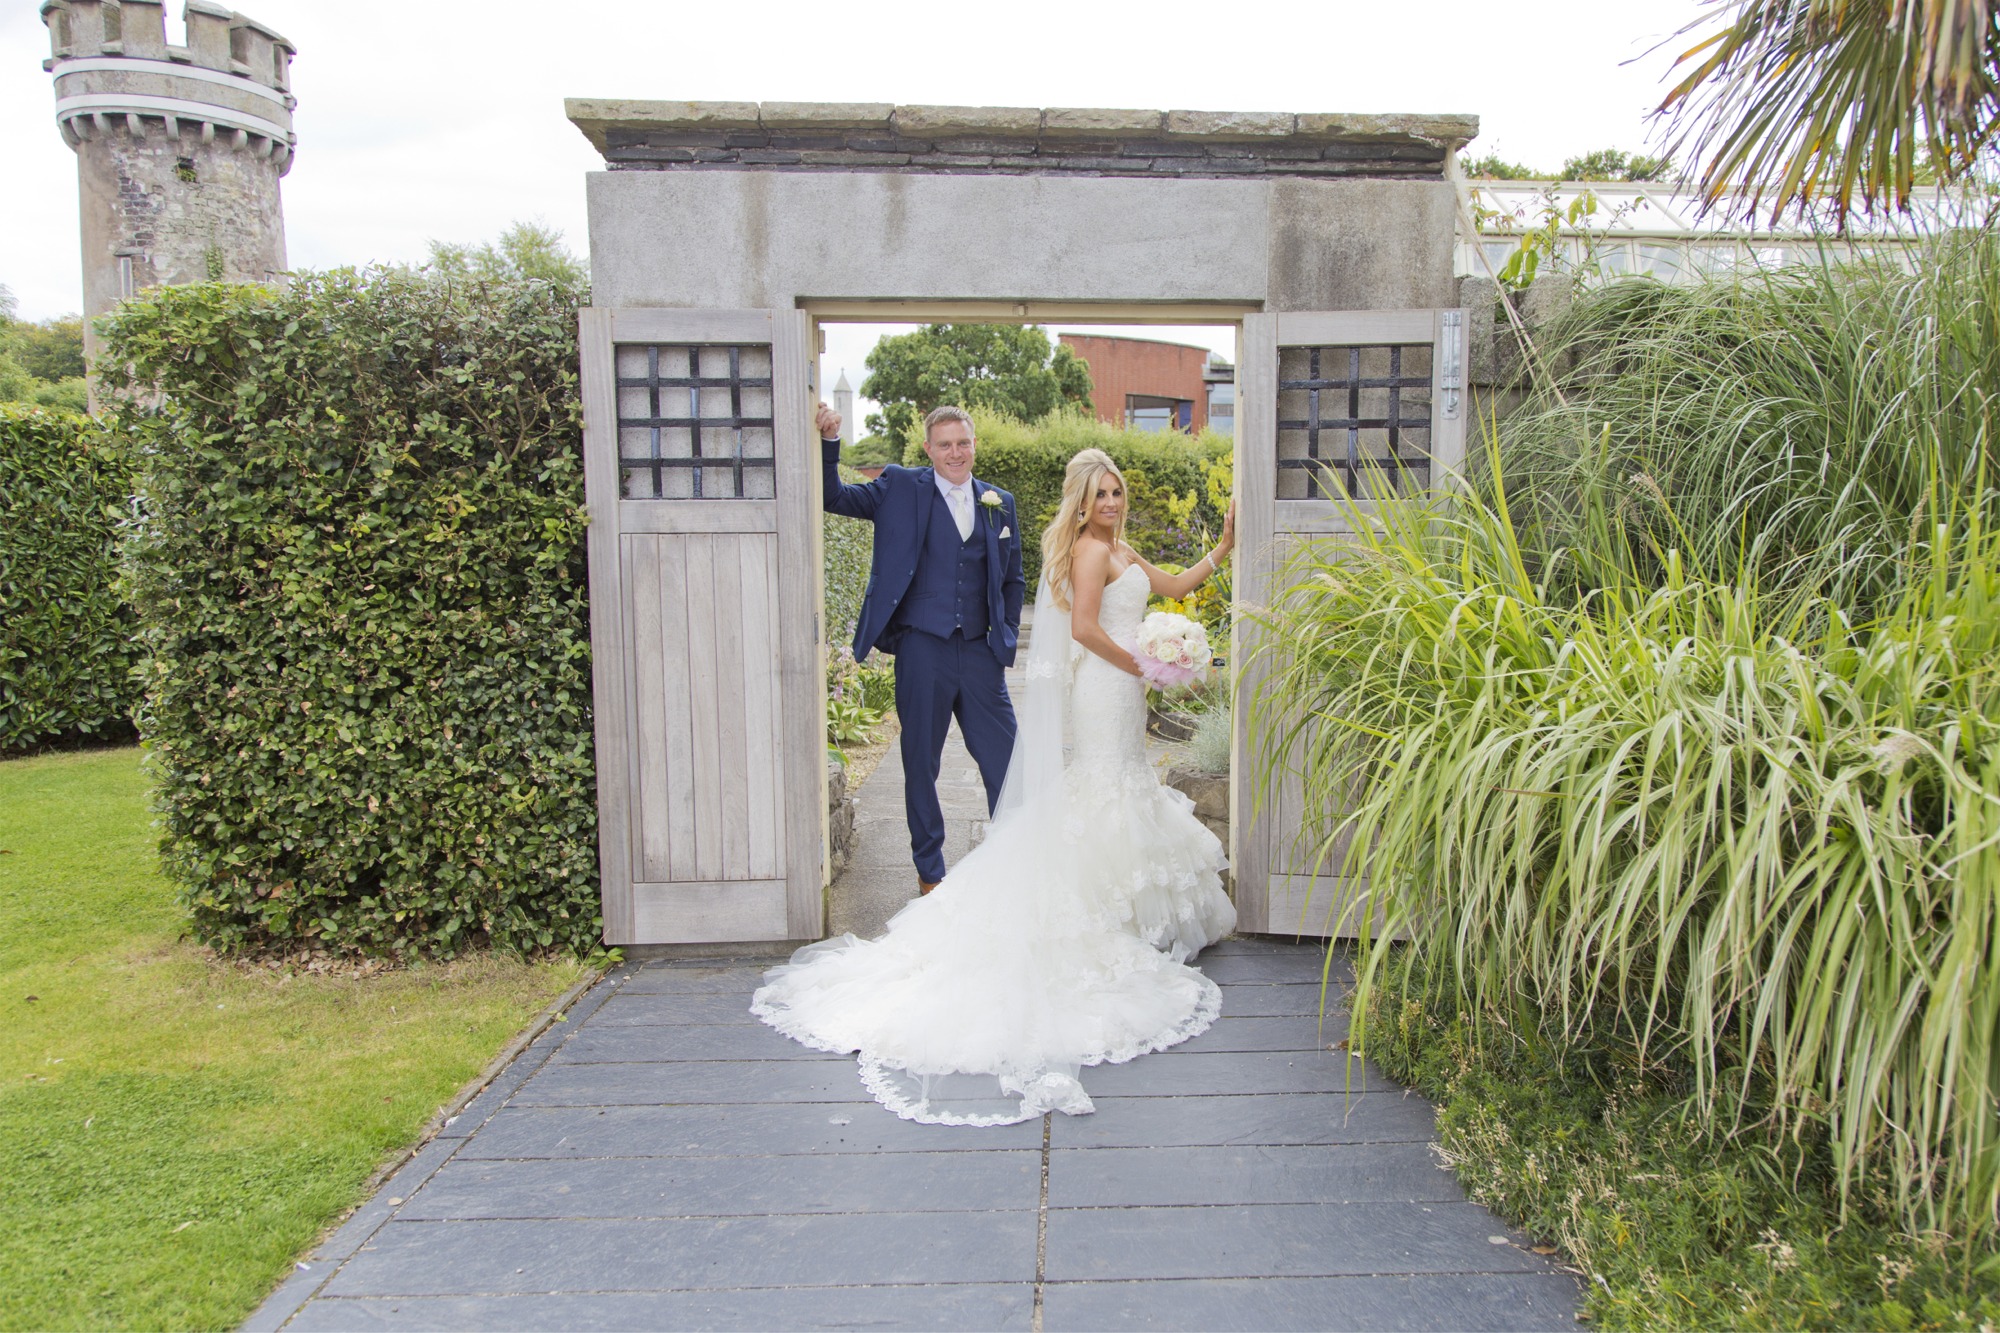 Wedding couple photographs by Wedding Photography Laois, Ireland